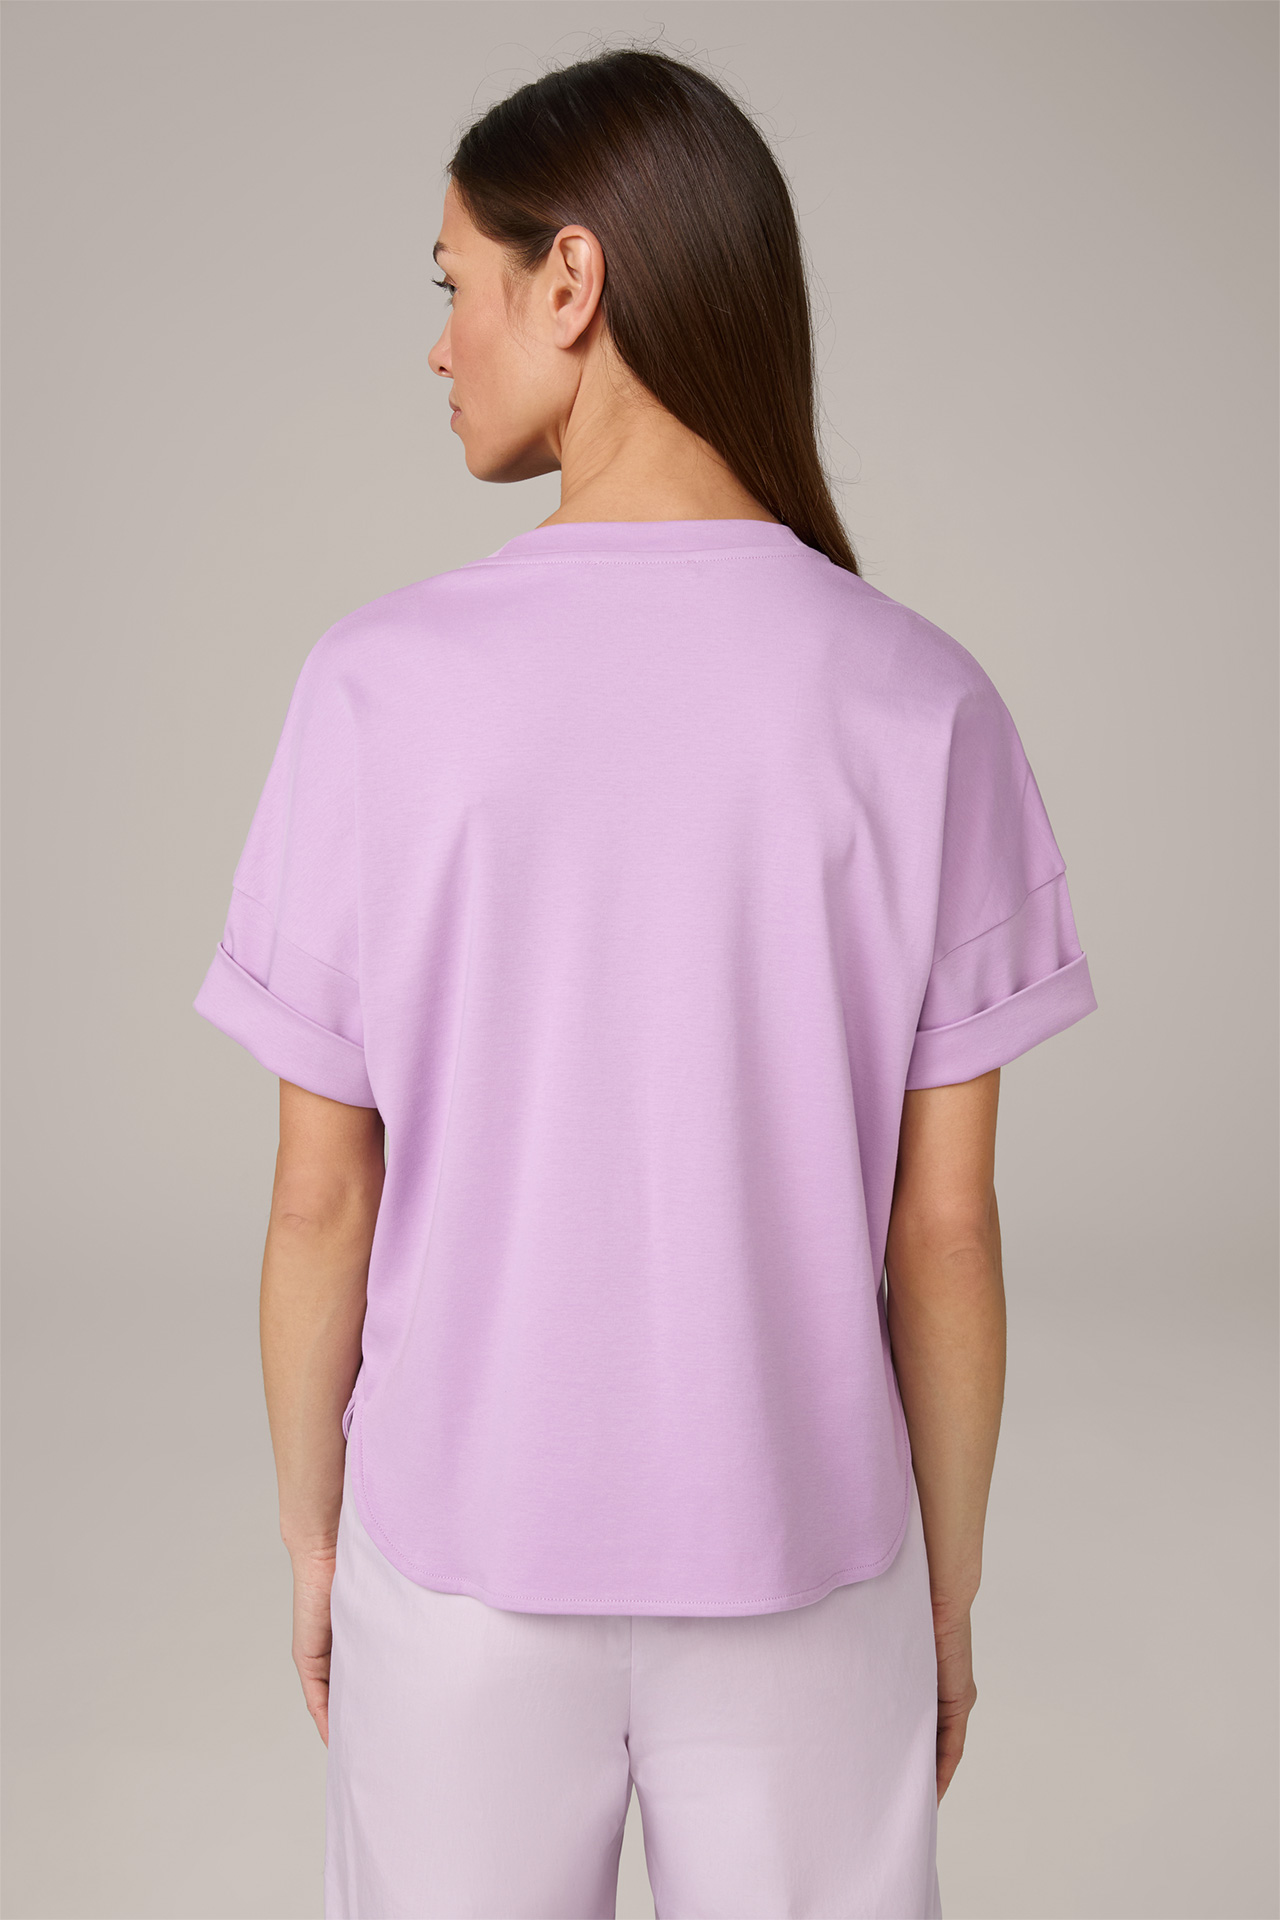 T-shirt en coton interlock à manches courtes, en lilas